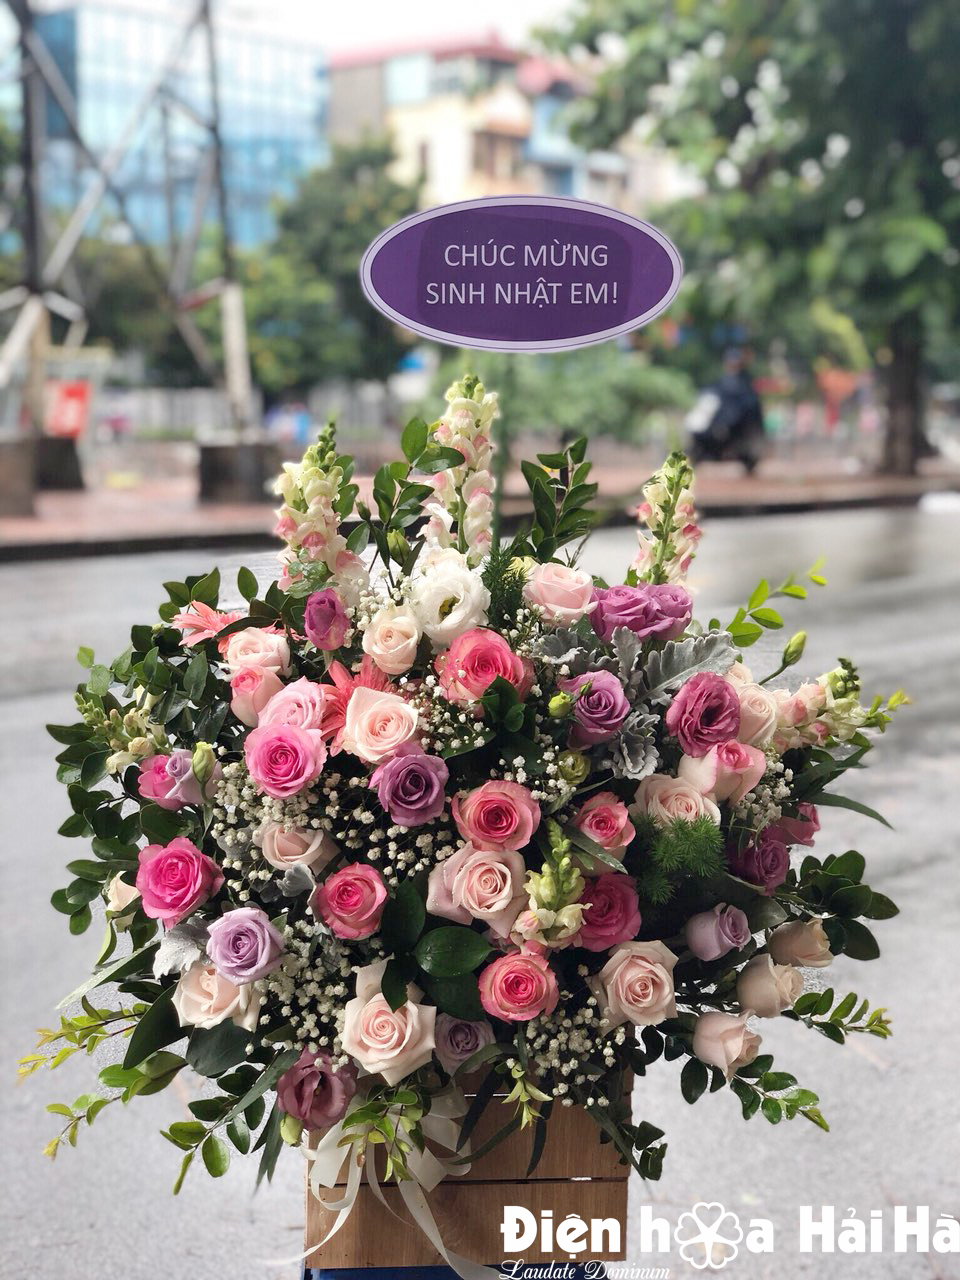 Giỏ hoa tặng 20/10 là món quà lãng mạn và đầy ý nghĩa dành cho người phụ nữ của bạn. Hãy xem những giỏ hoa xinh xắn và sang trọng để chọn lựa cho mình một món quà tặng độc đáo và đầy ý nghĩa.